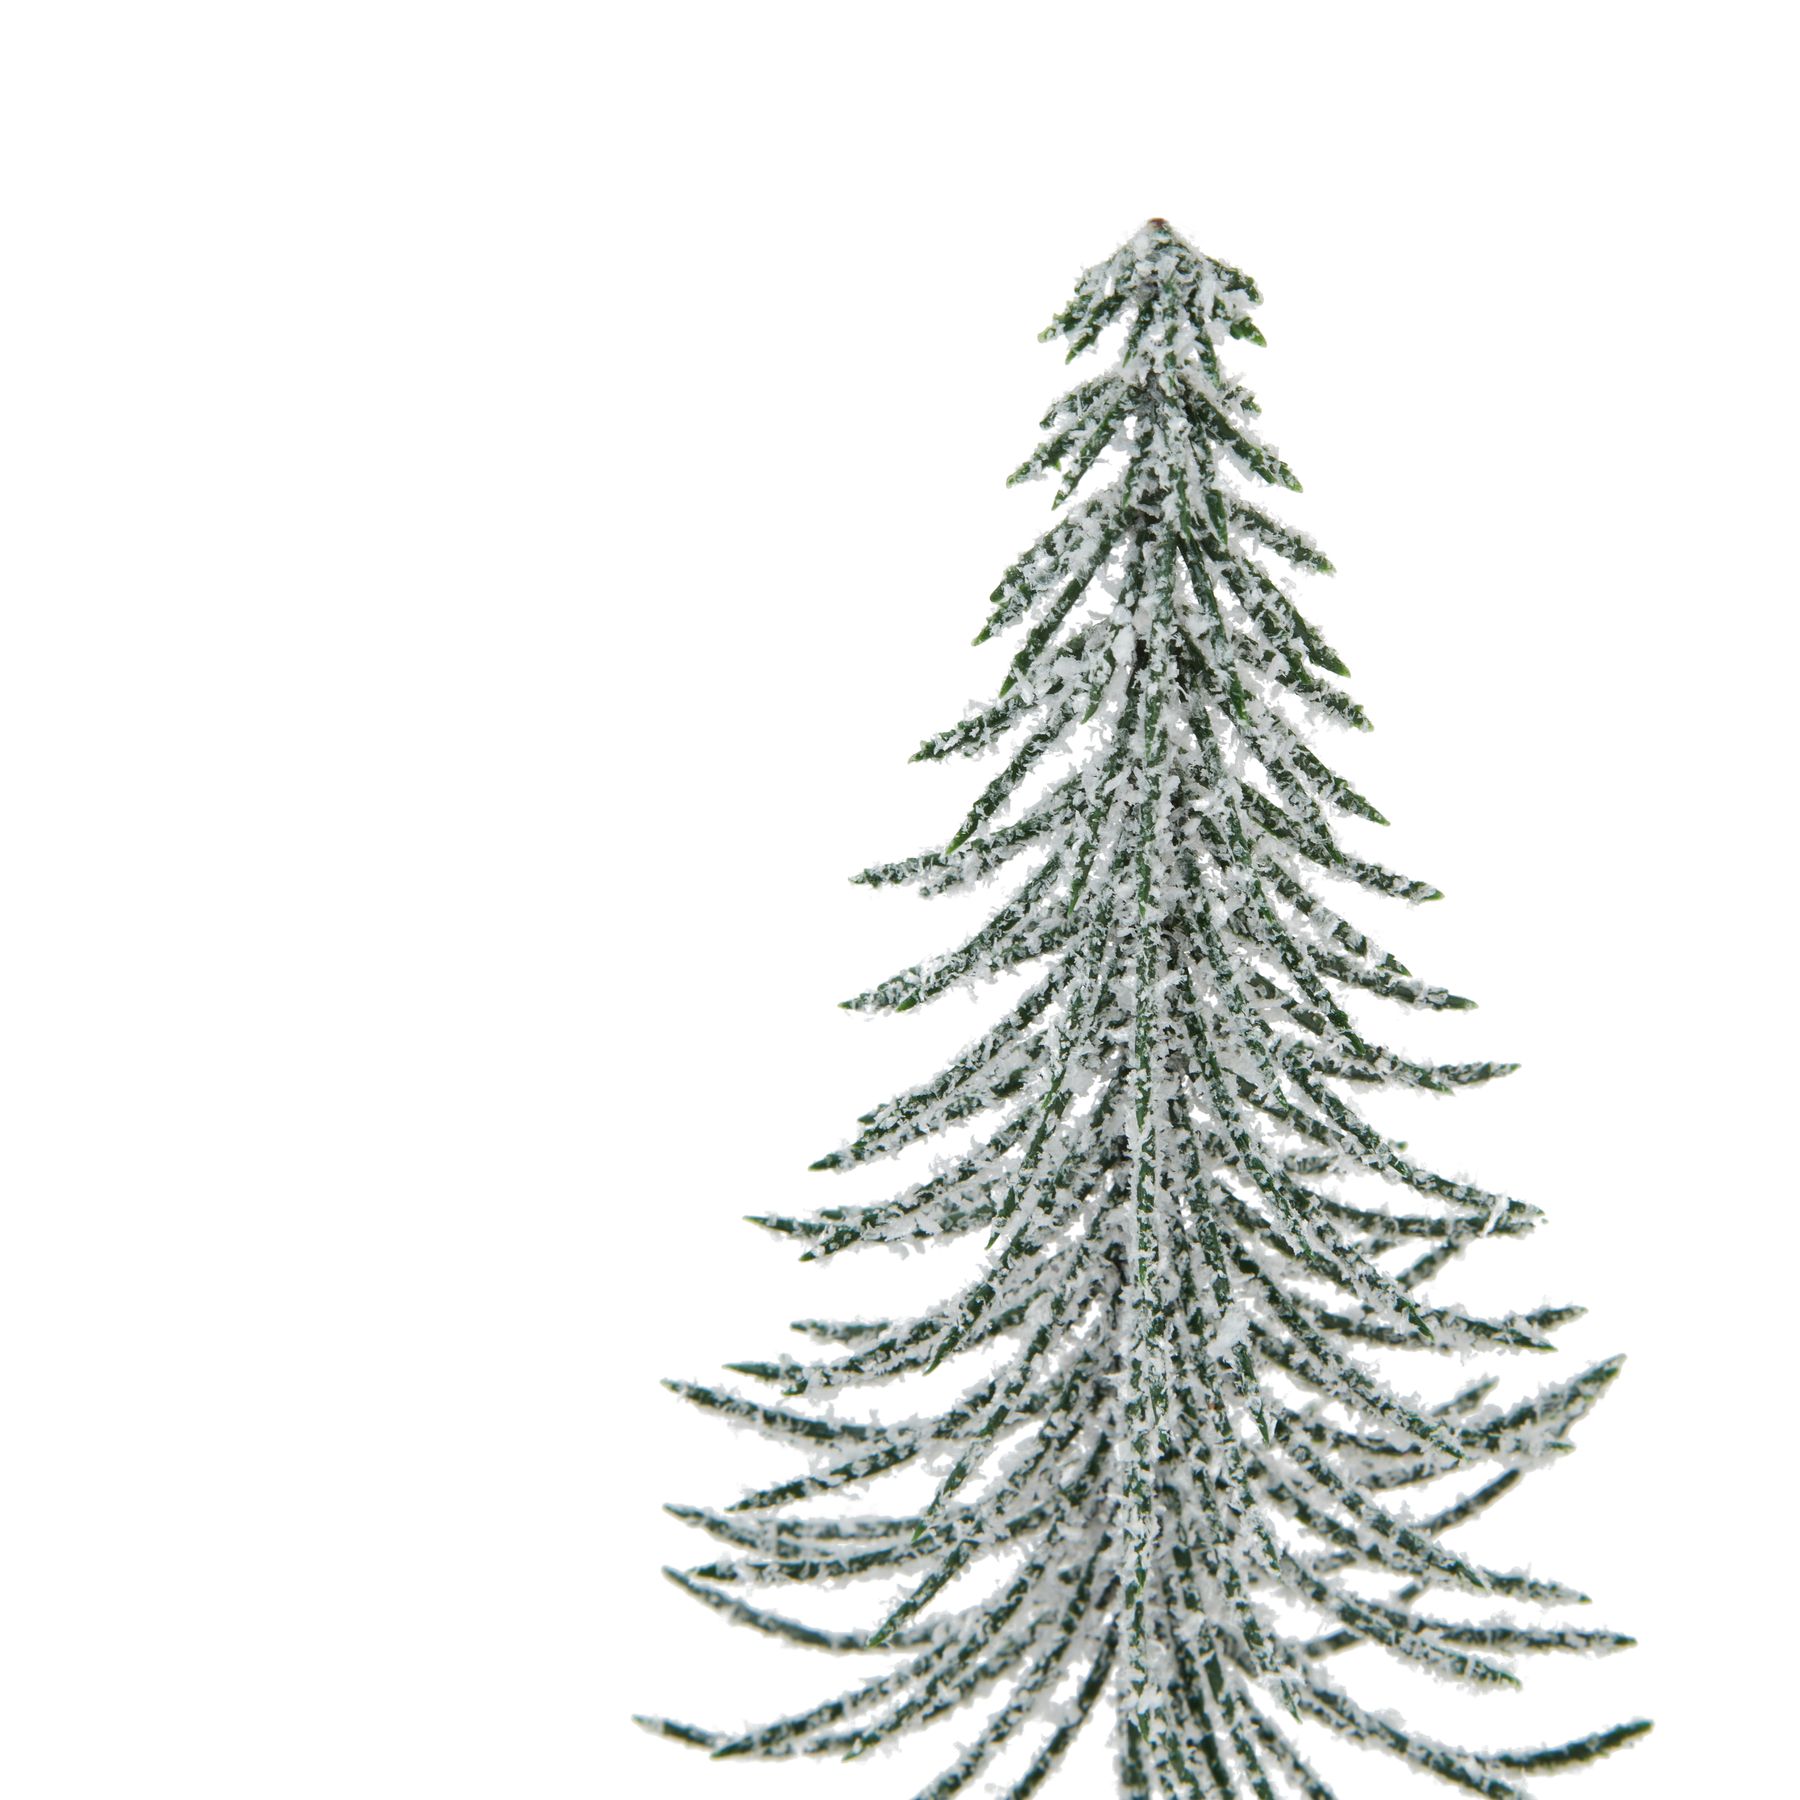 Medium Snowy Spindle Tree In Wood Log - Image 2